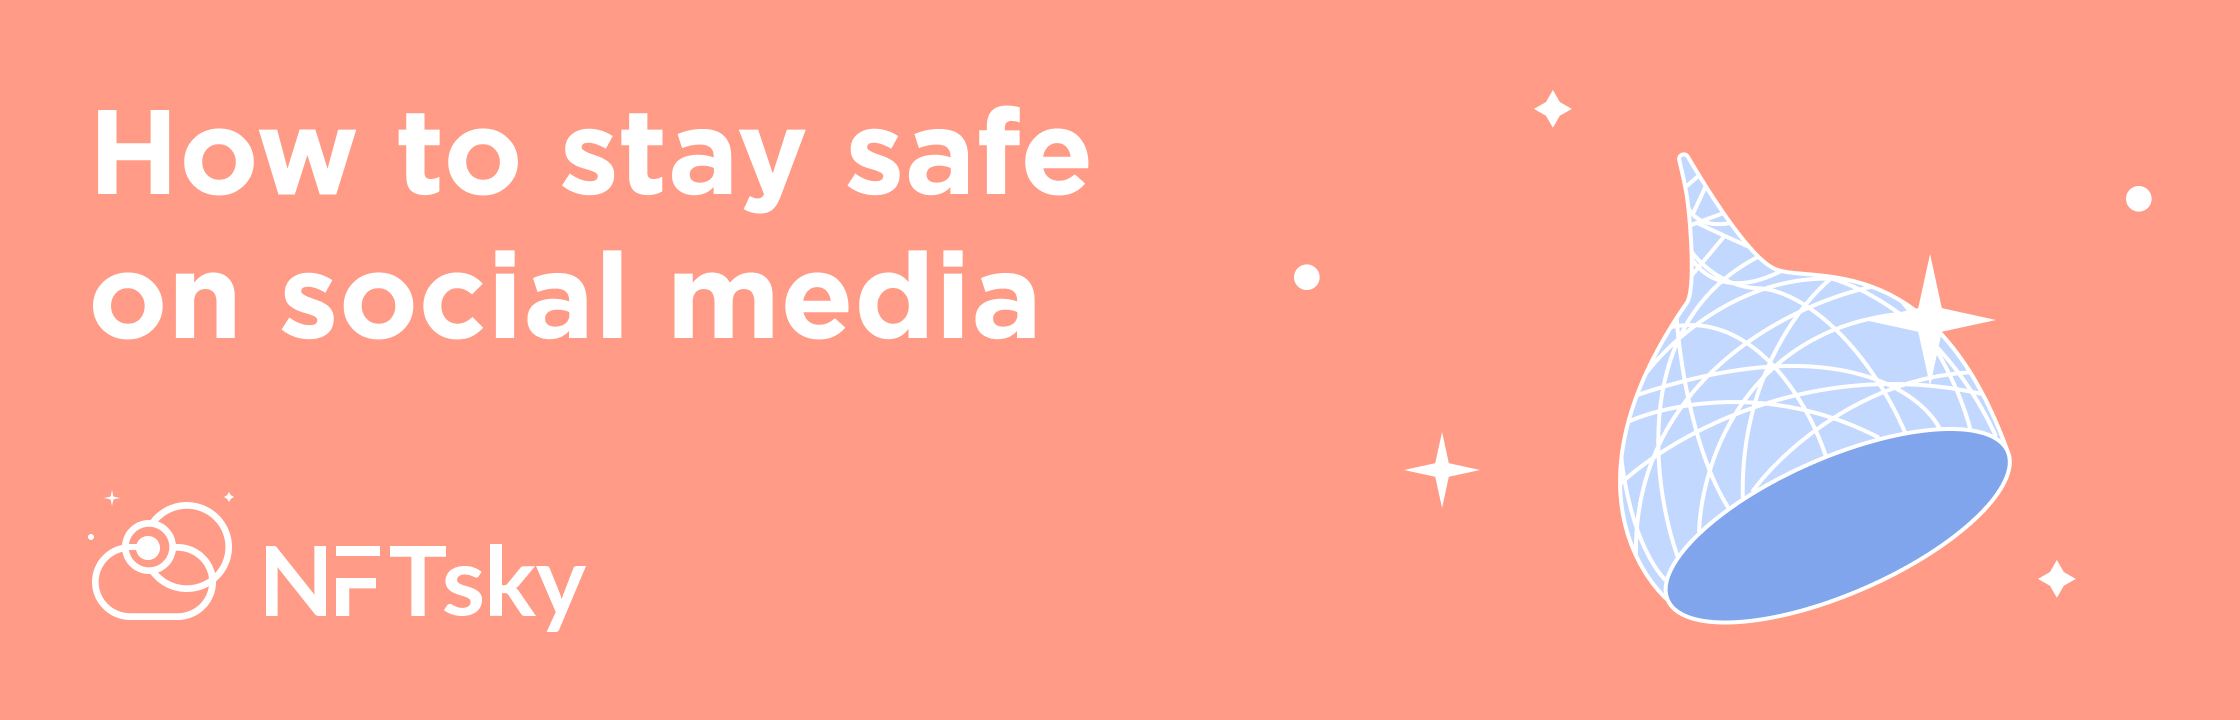 How to stay safe on social mediaon NFTsky